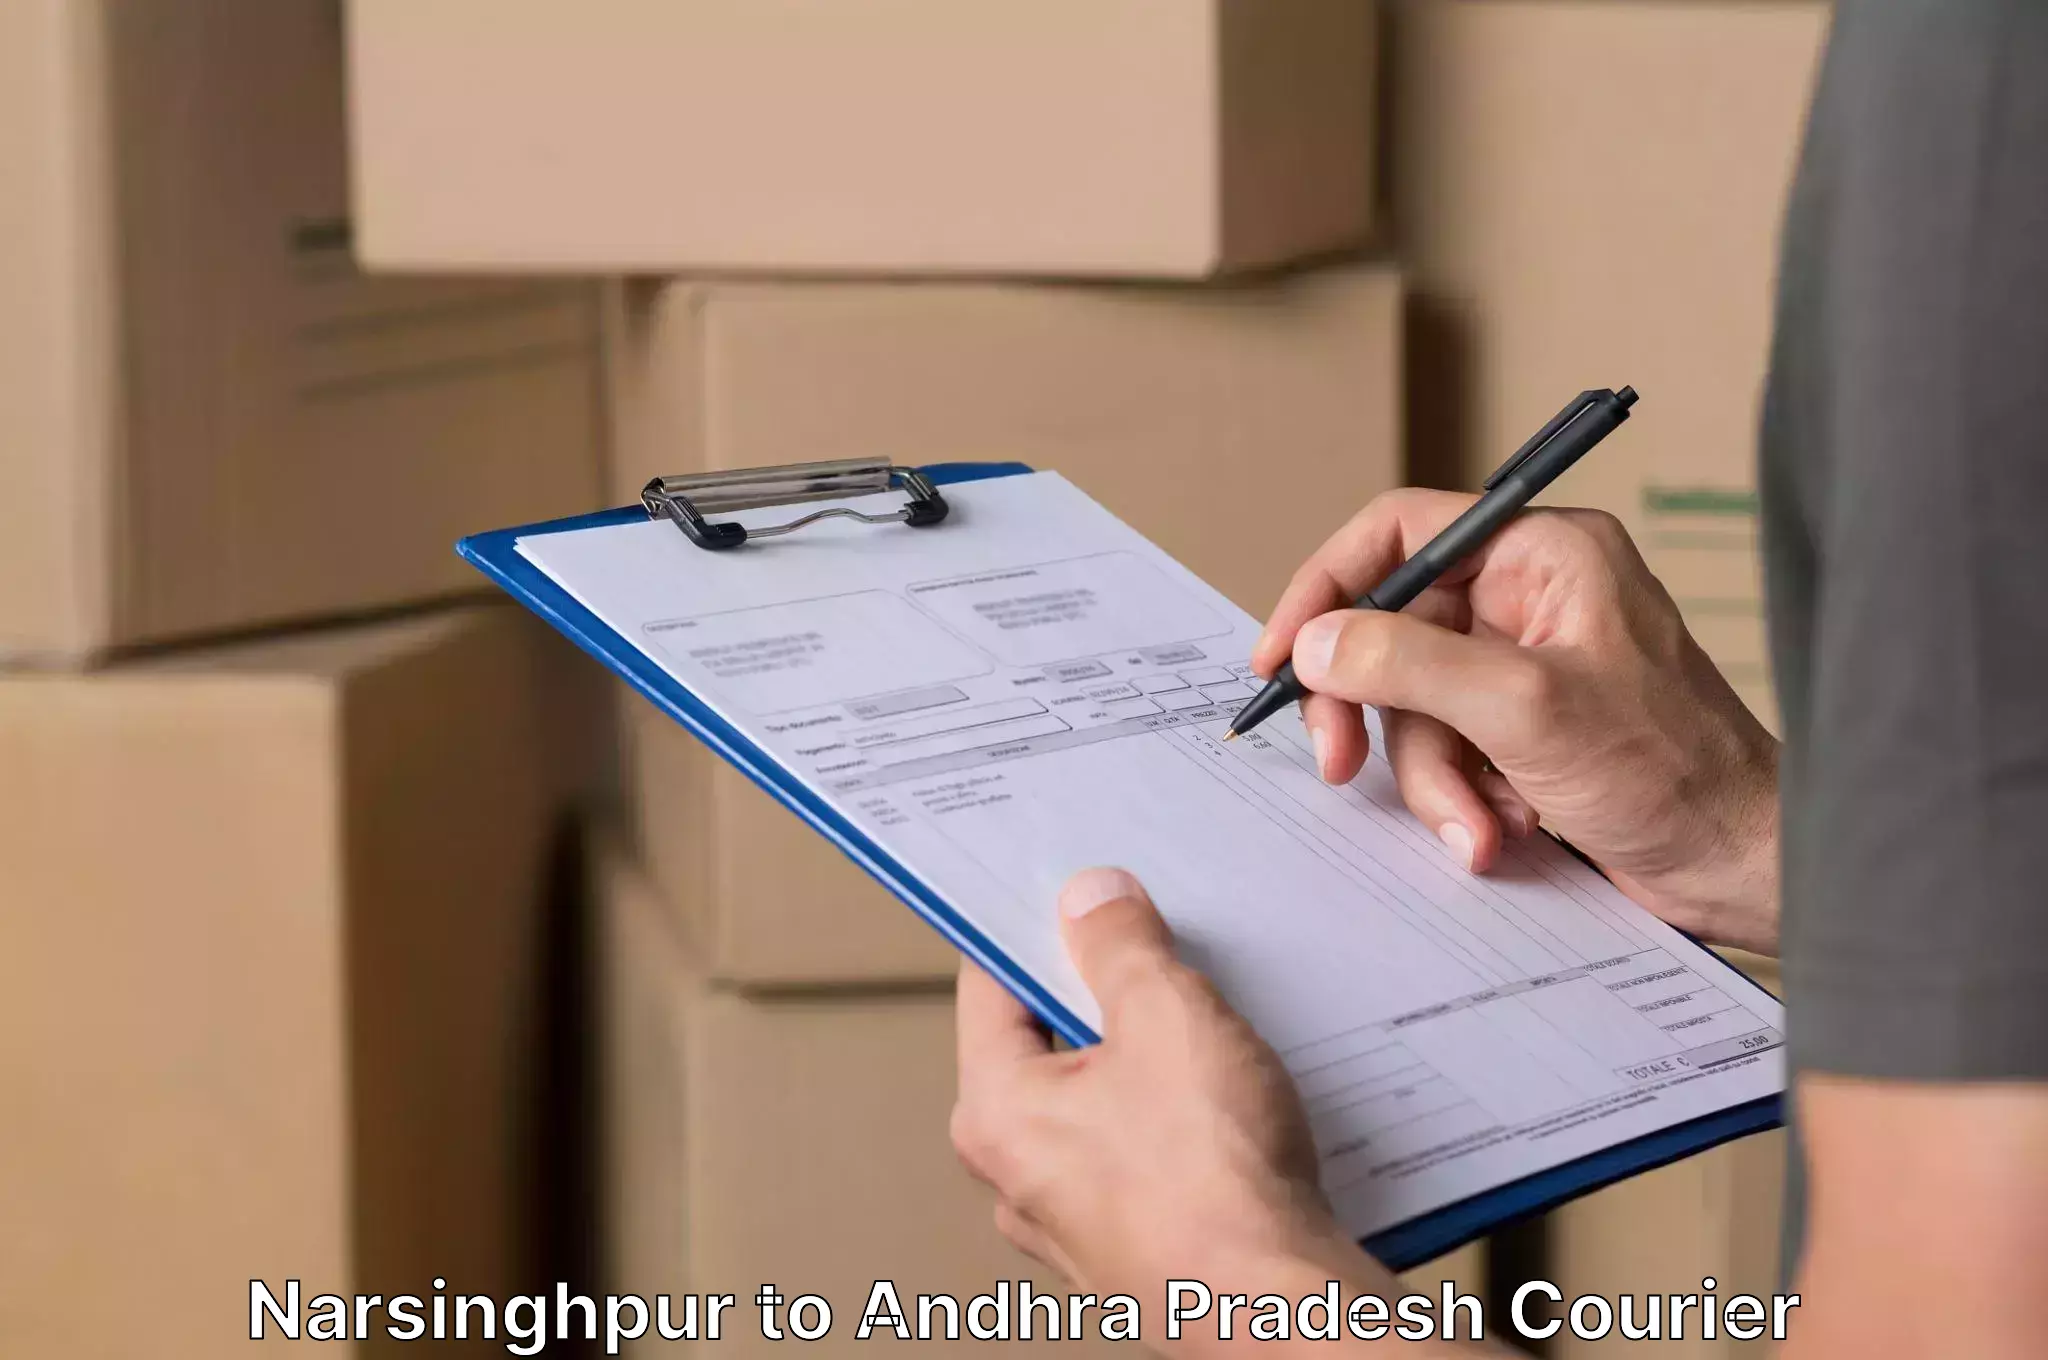 Stress-free furniture moving Narsinghpur to Andhra Pradesh